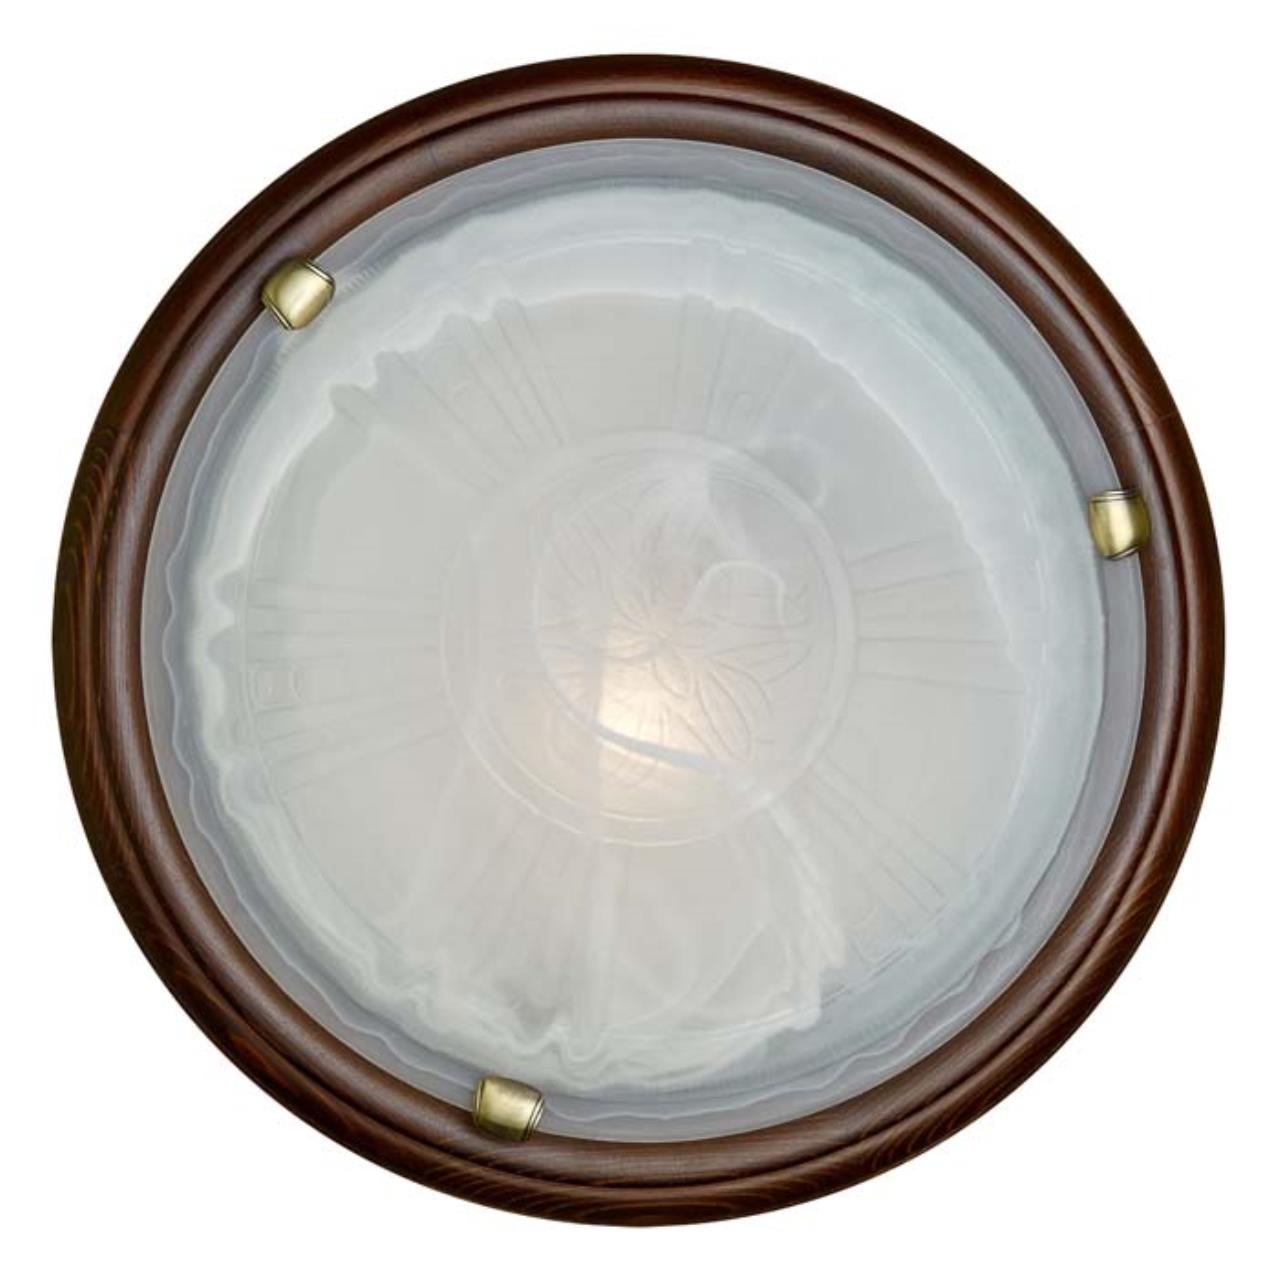 236 GL-WOOD SN 111 Светильник стекло/белое/темный орех E27 2*100Вт D460 LUFE WOOD